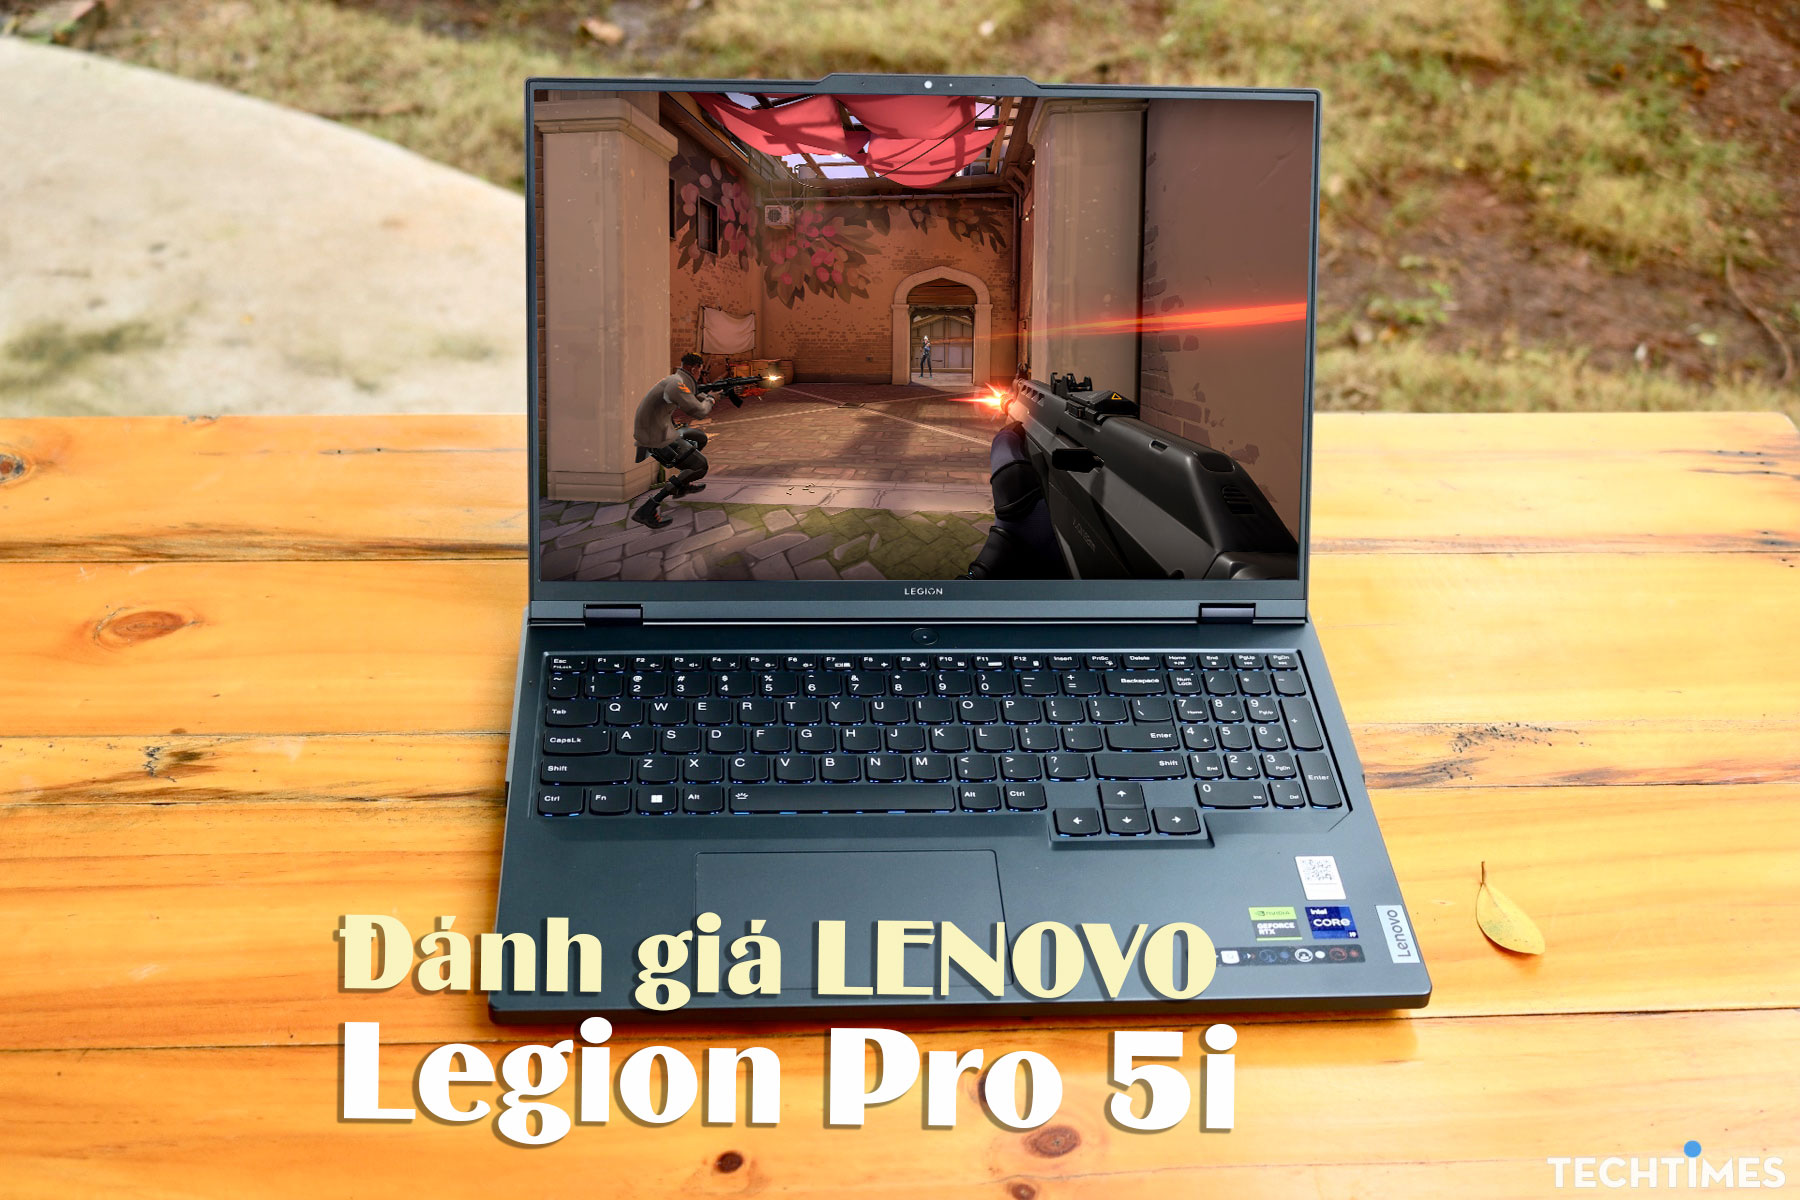 Đánh giá Legion Pro 5i: ‘Khủng long’ chiến game mạnh mẽ